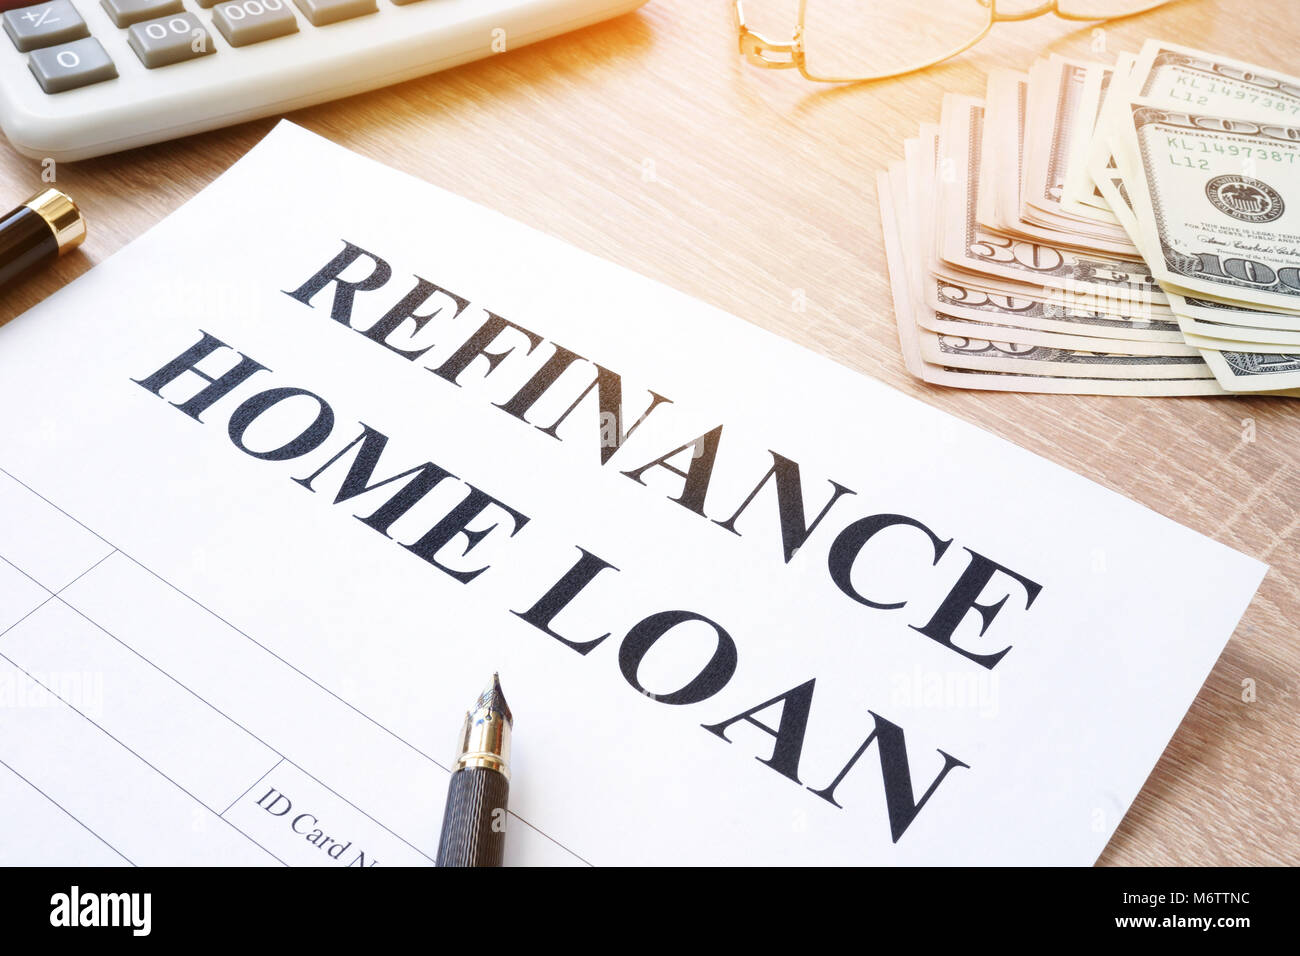 Housing loan refinance